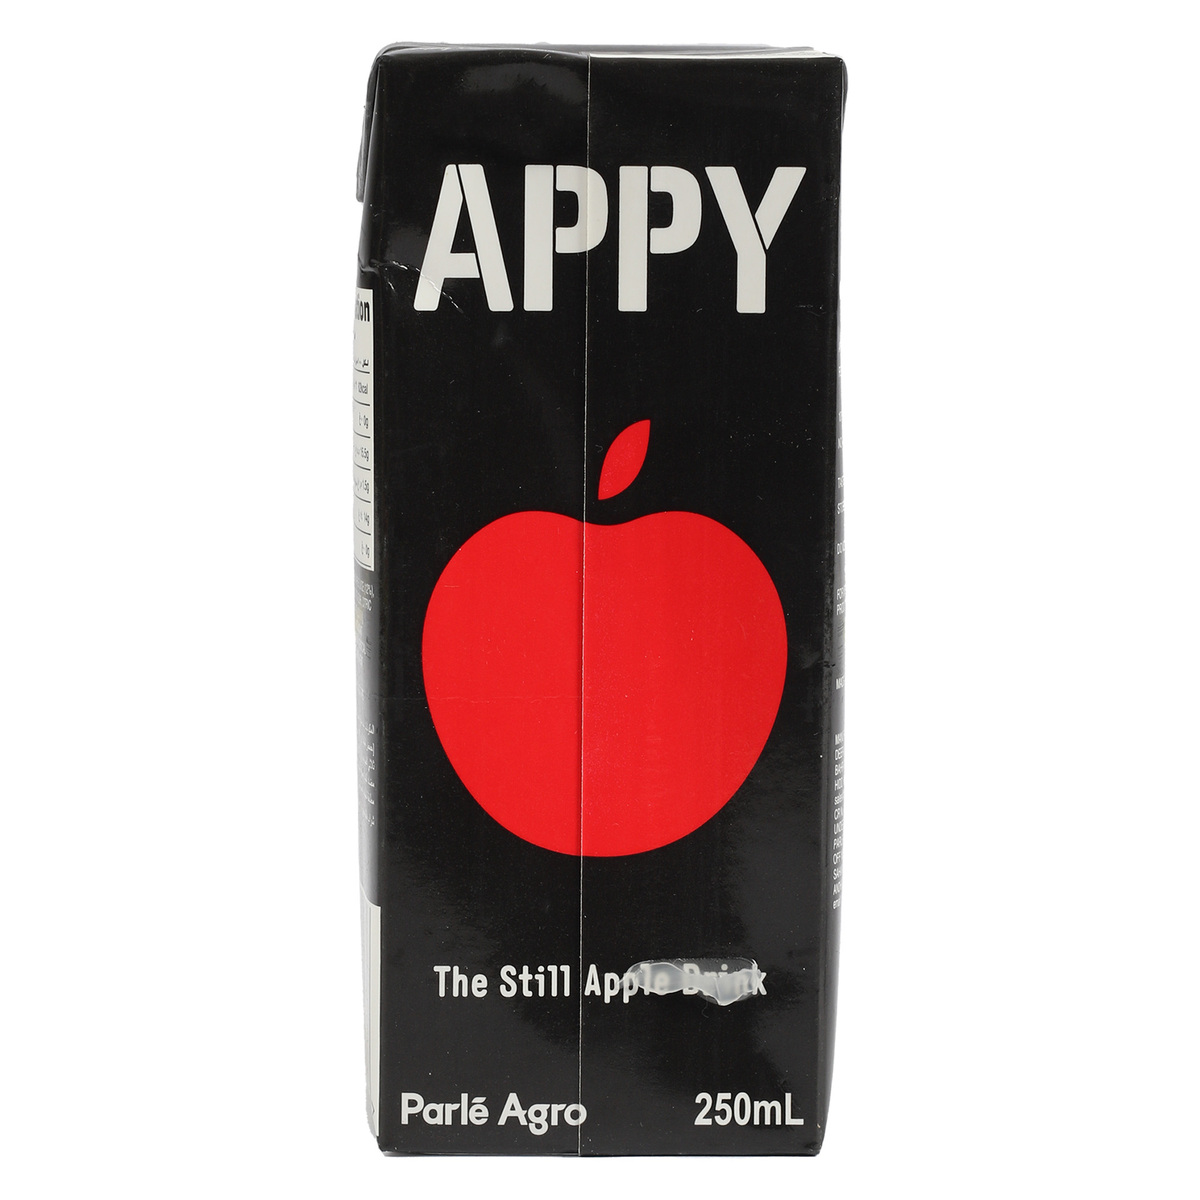 Appy Apple Drink 250 ml